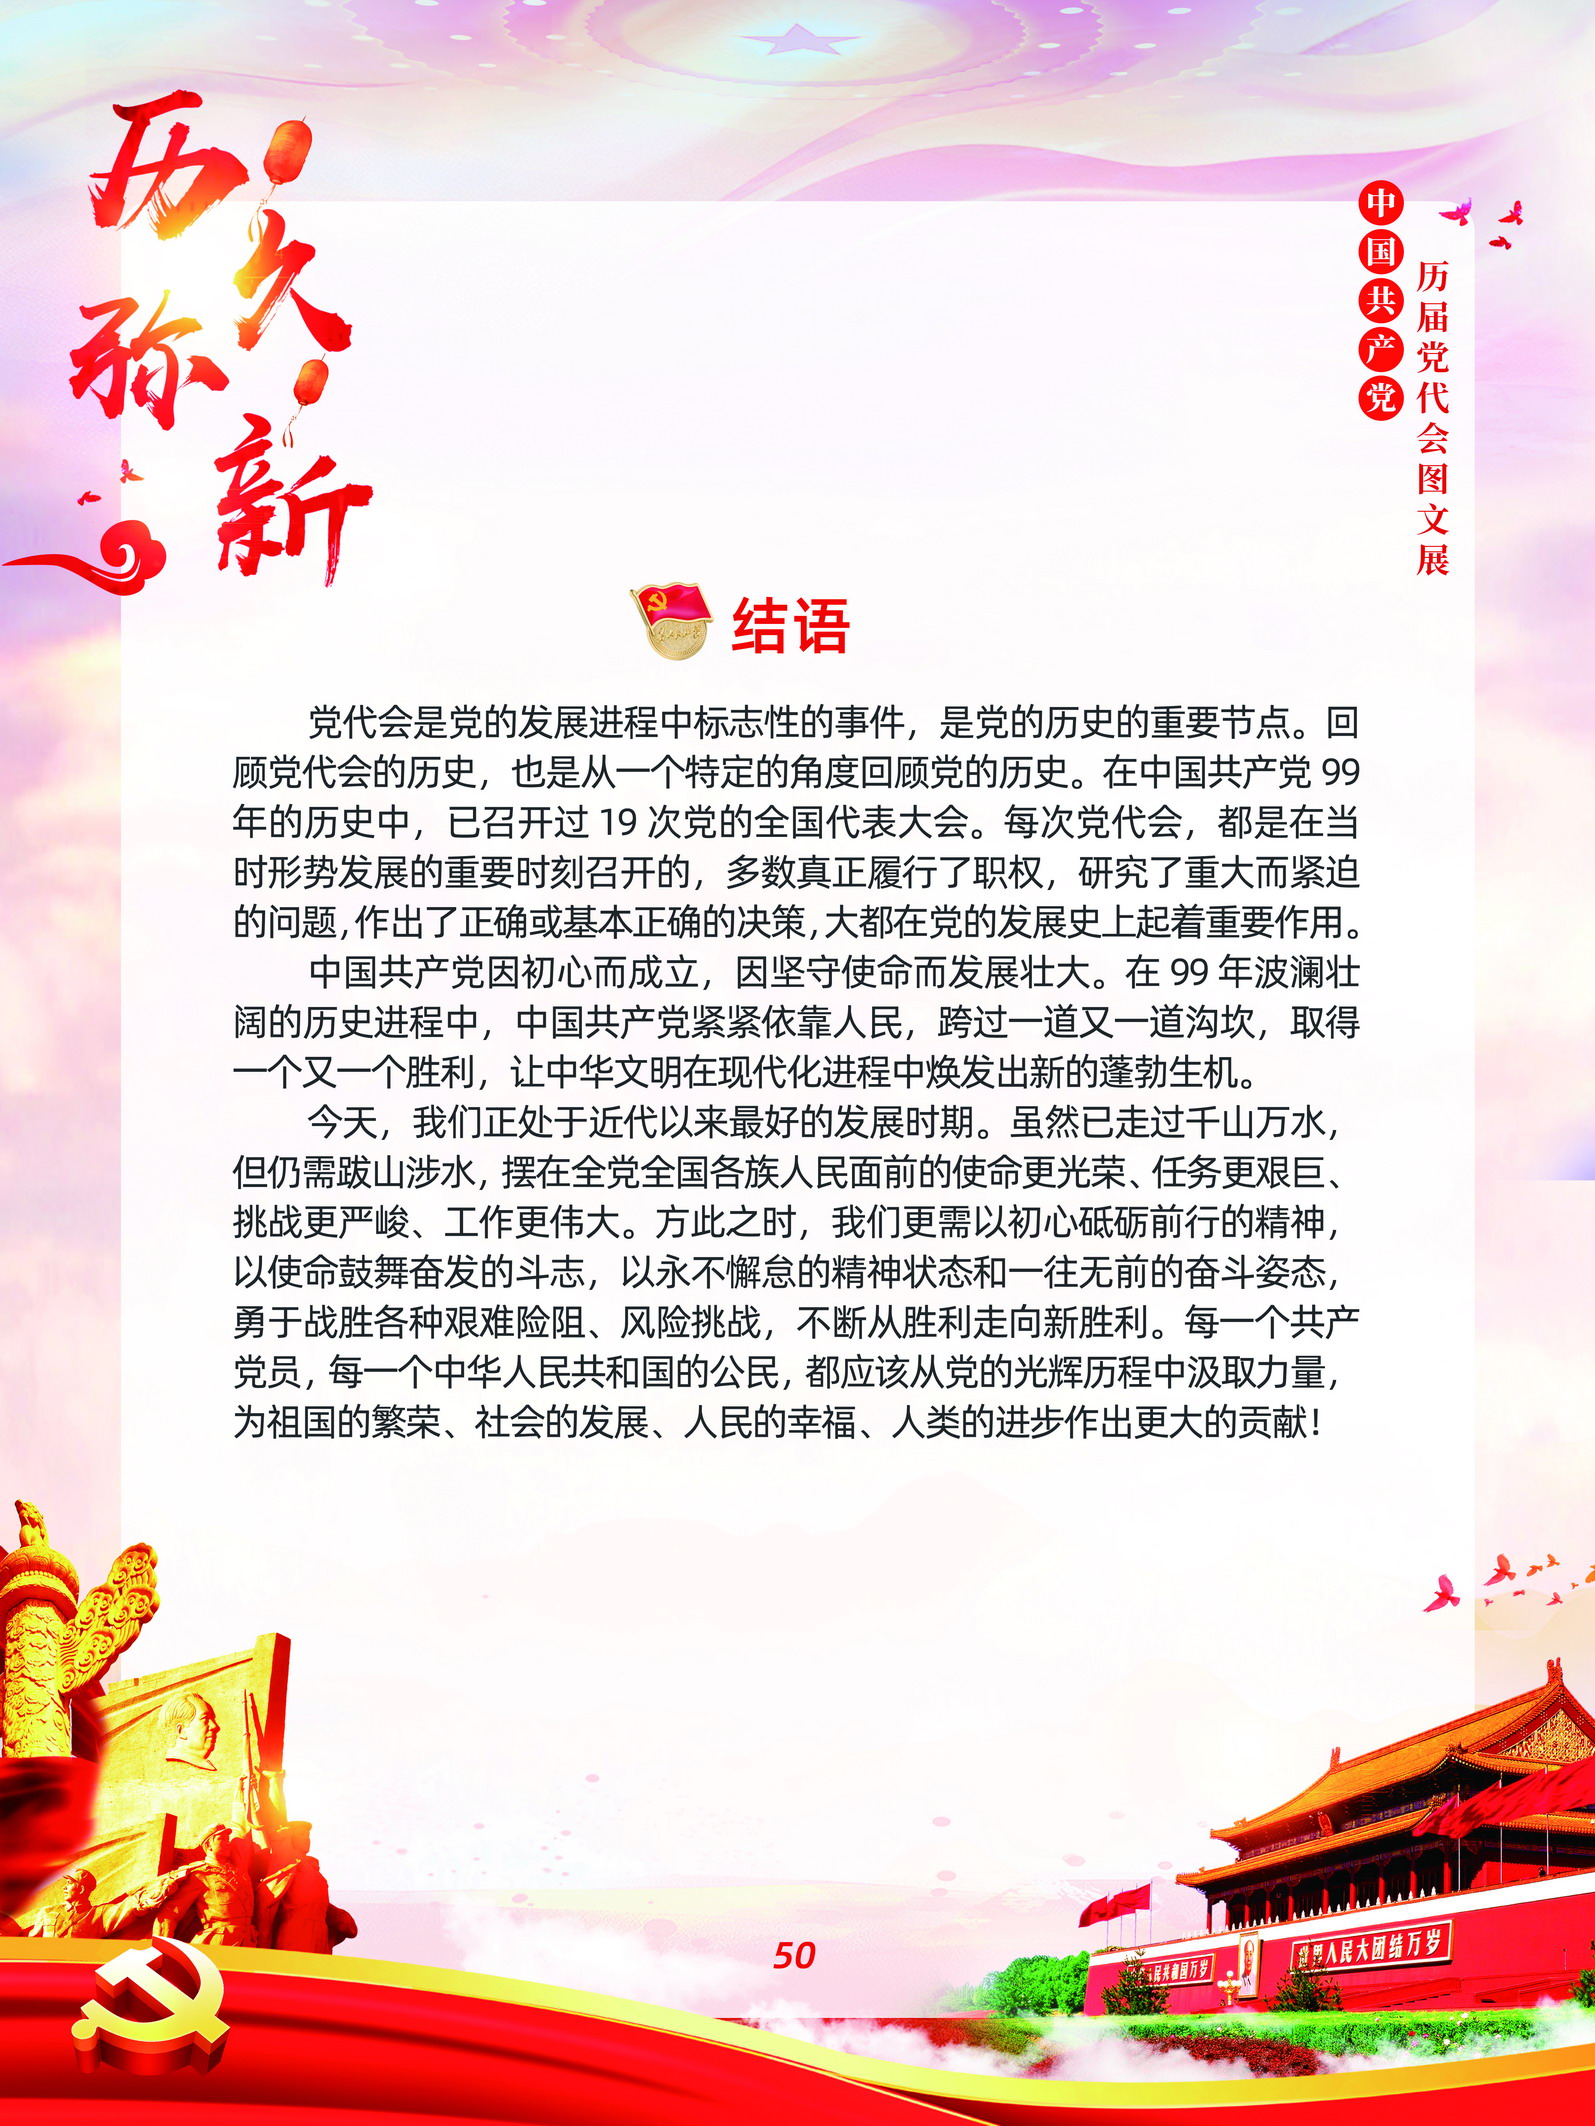 中国共产党历届党代会图文展_图49